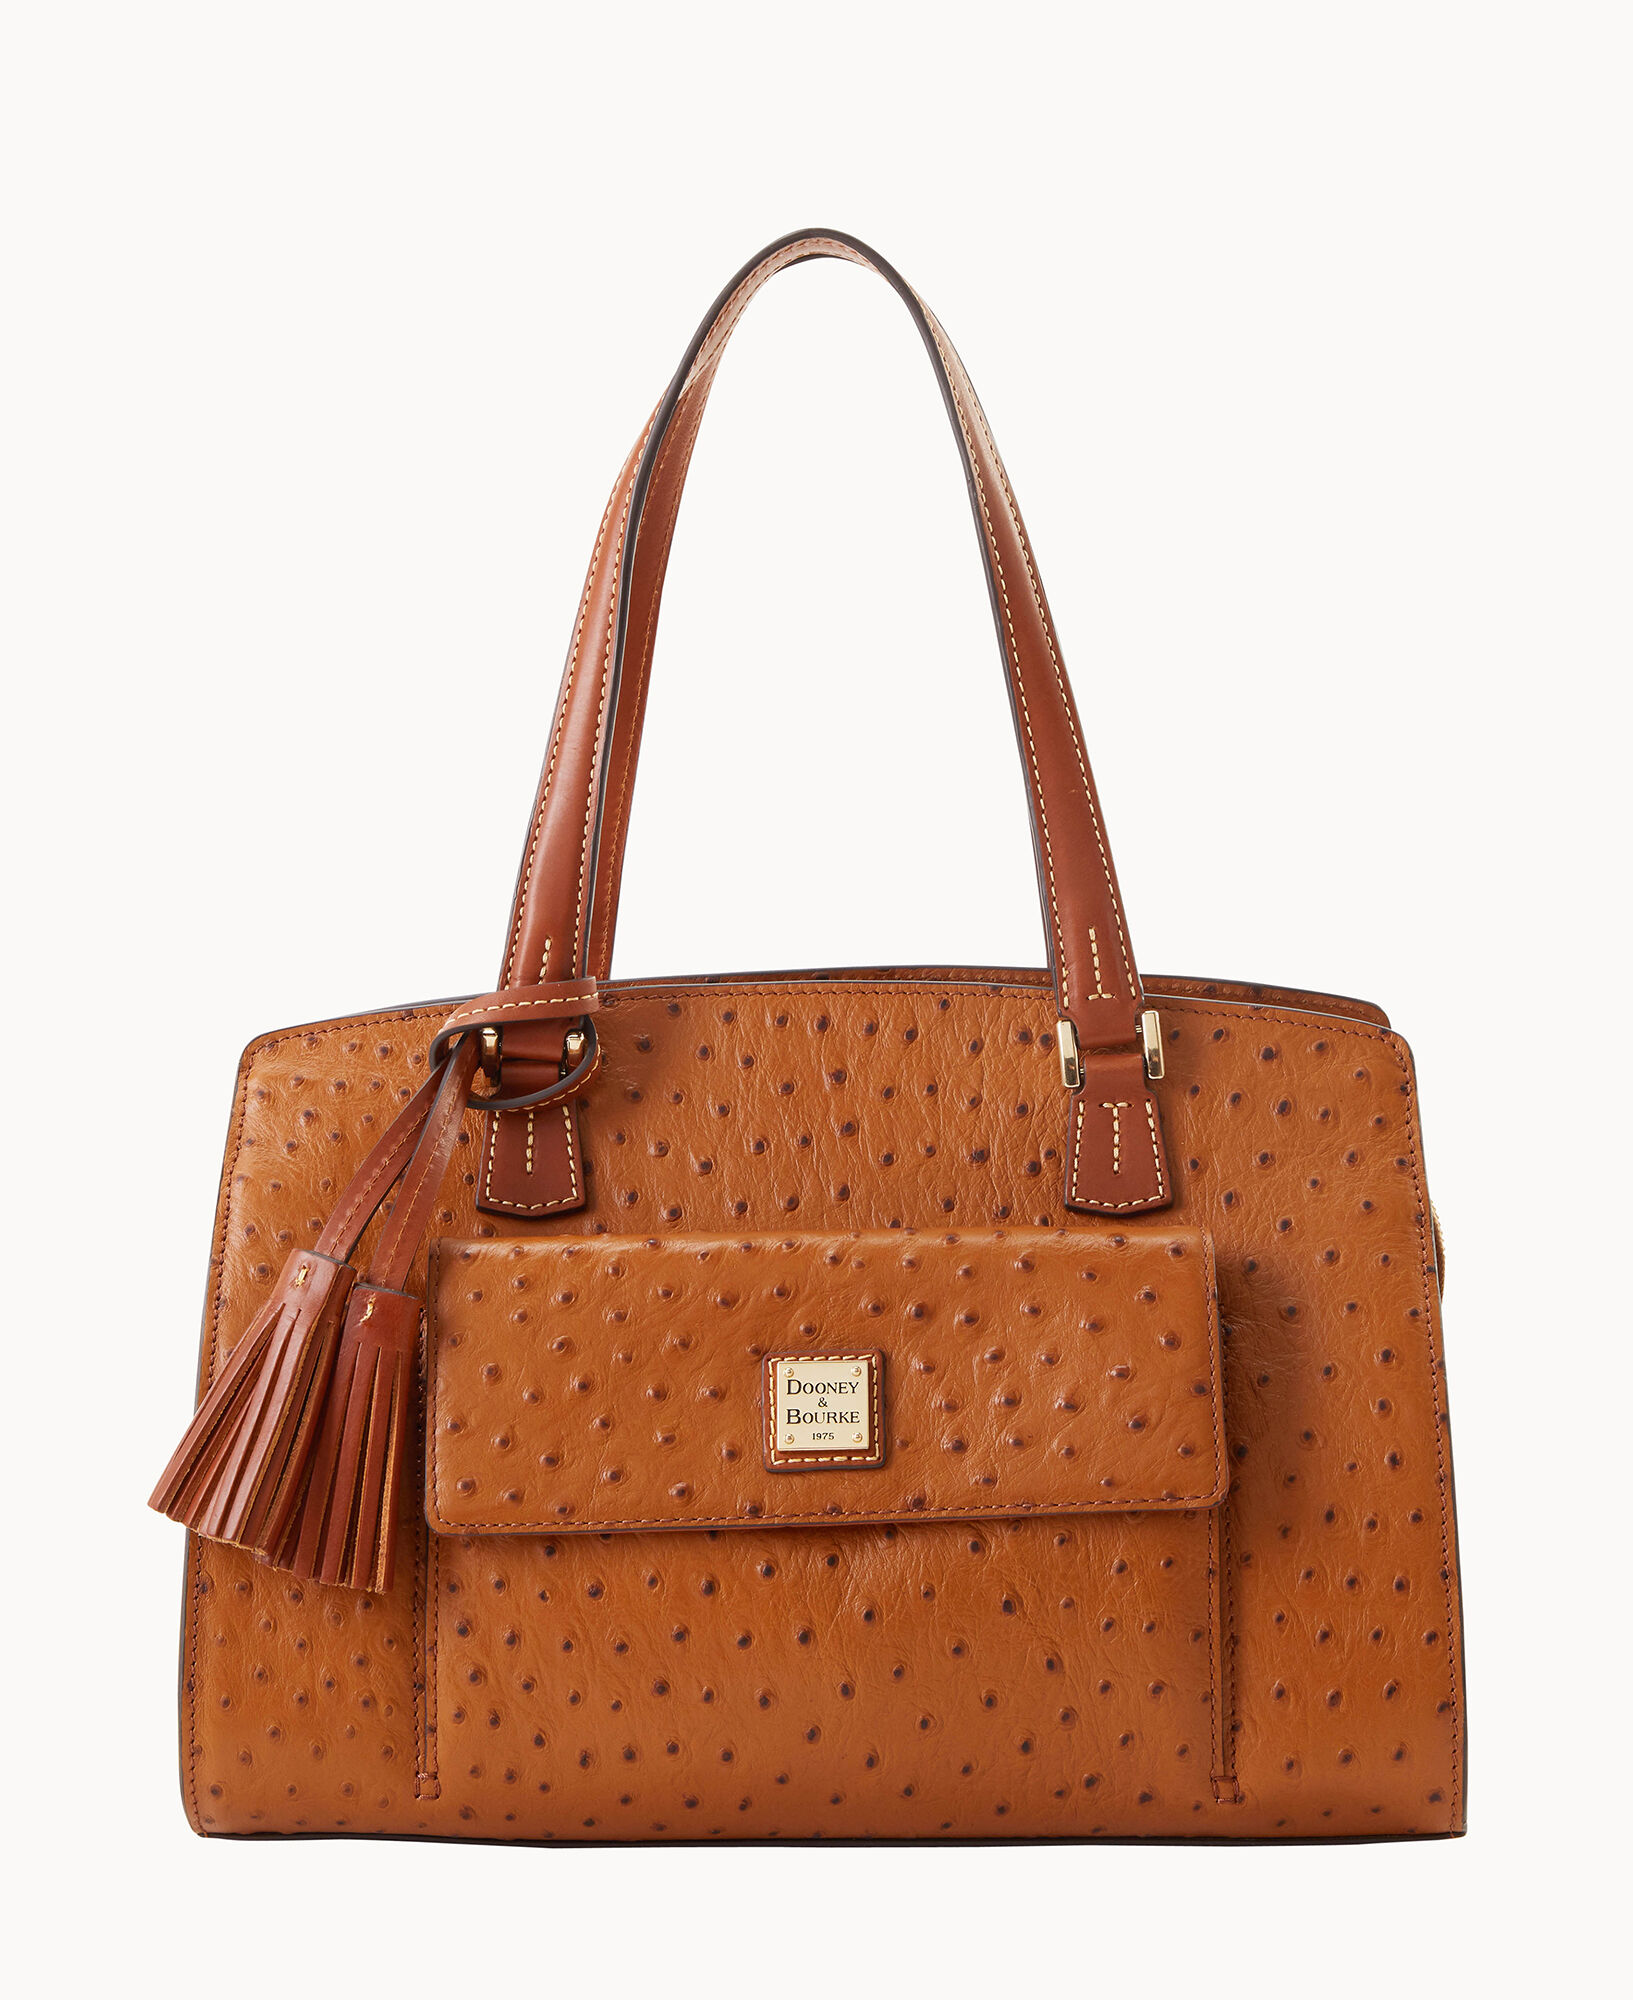 Dooney & Bourke Purse Ostrich Leather Handbag Orange Leather 